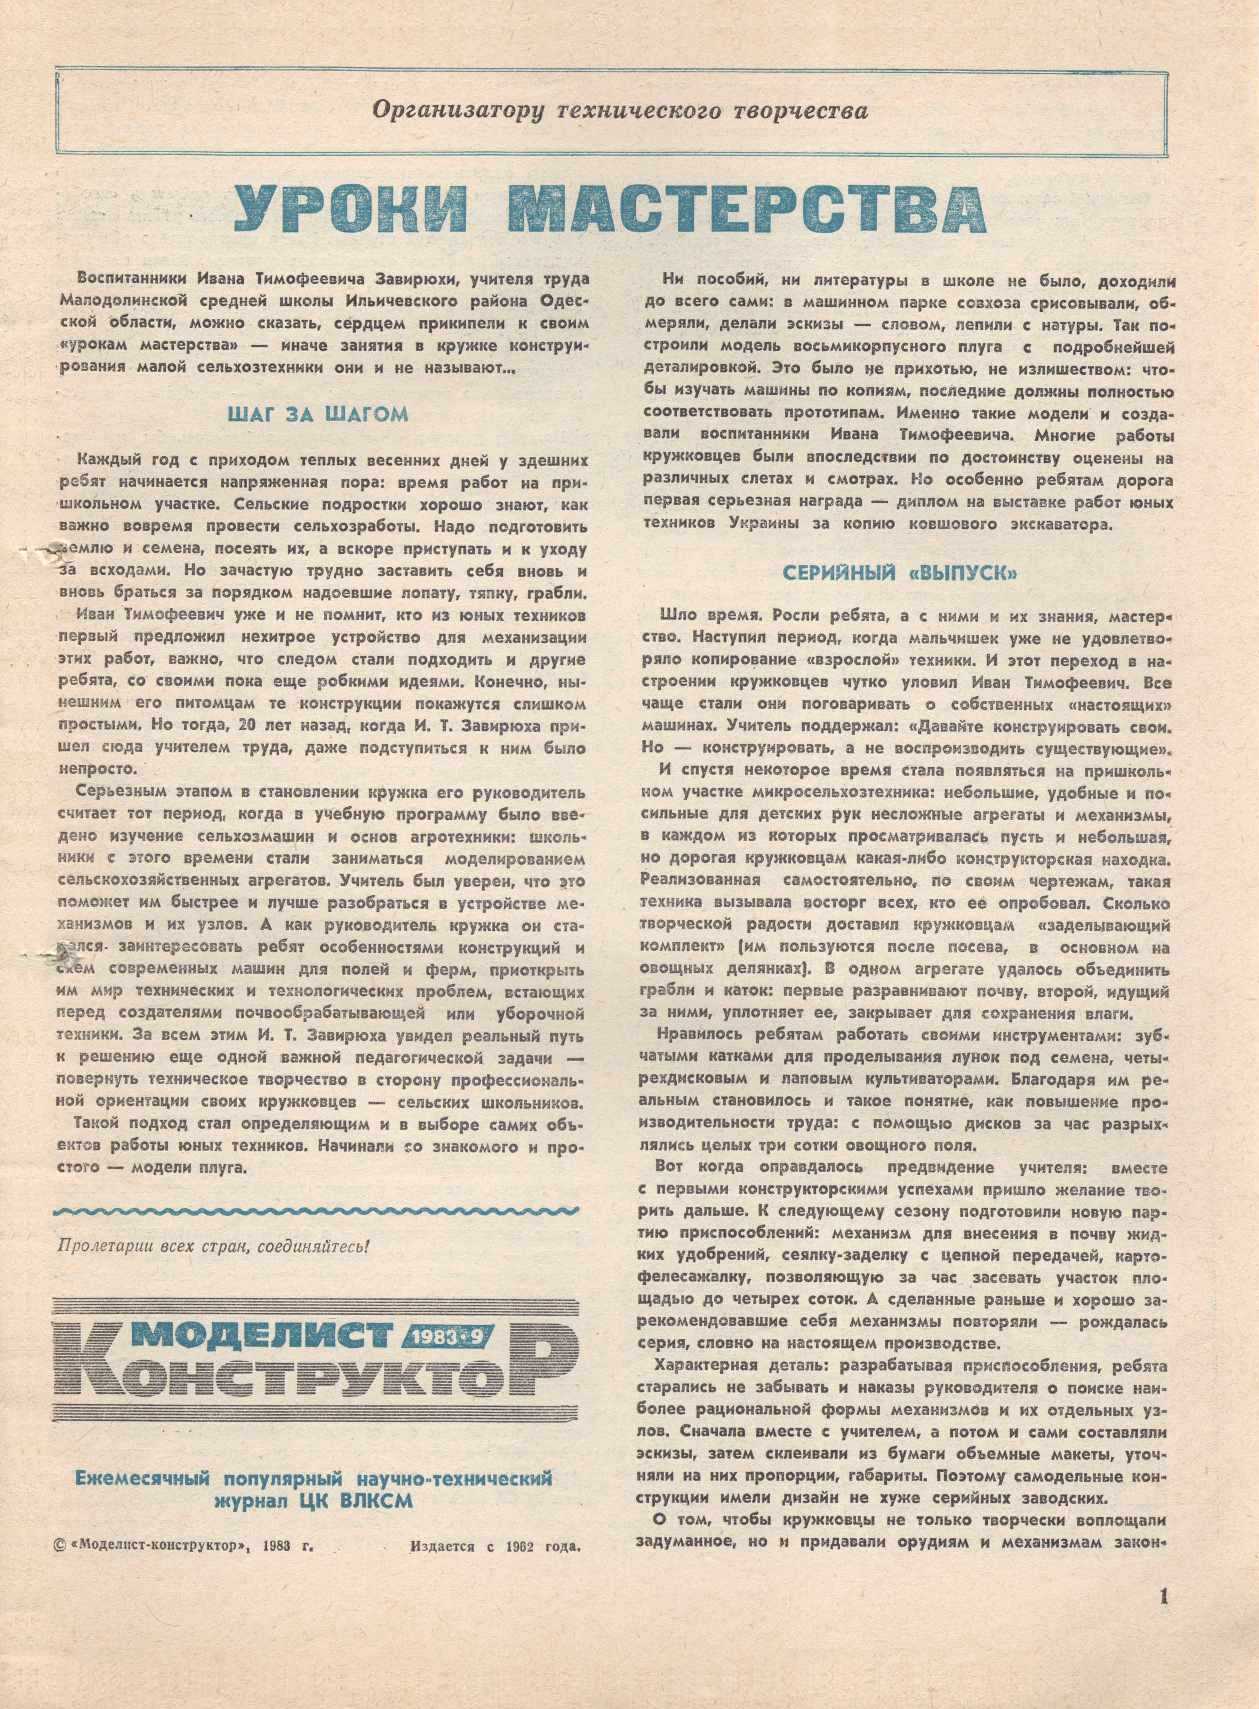 МК 9, 1983, 1 c.